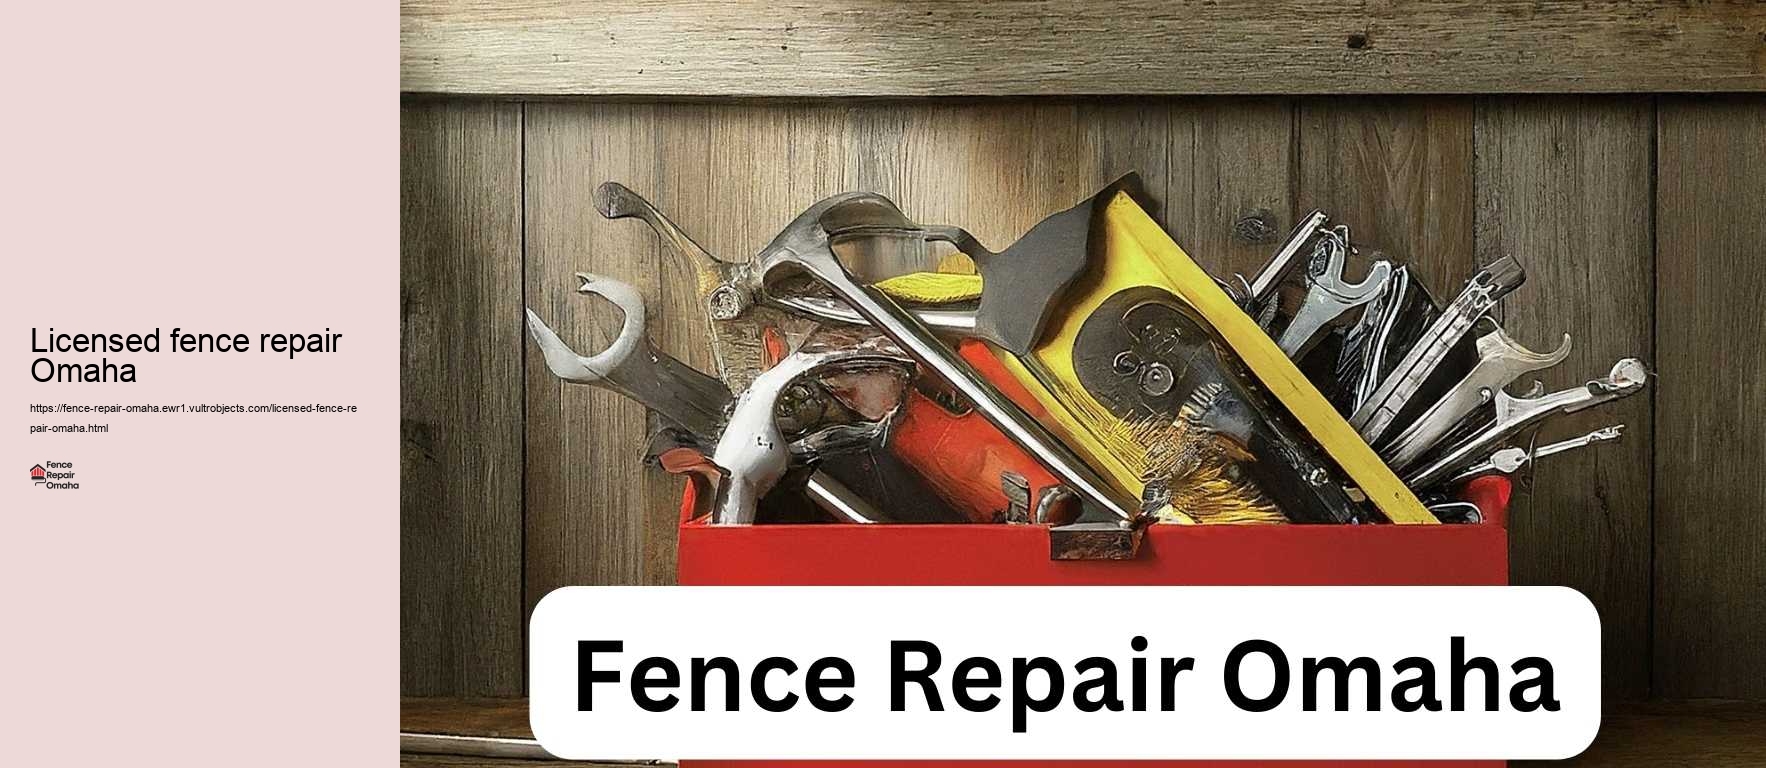 Licensed fence repair Omaha